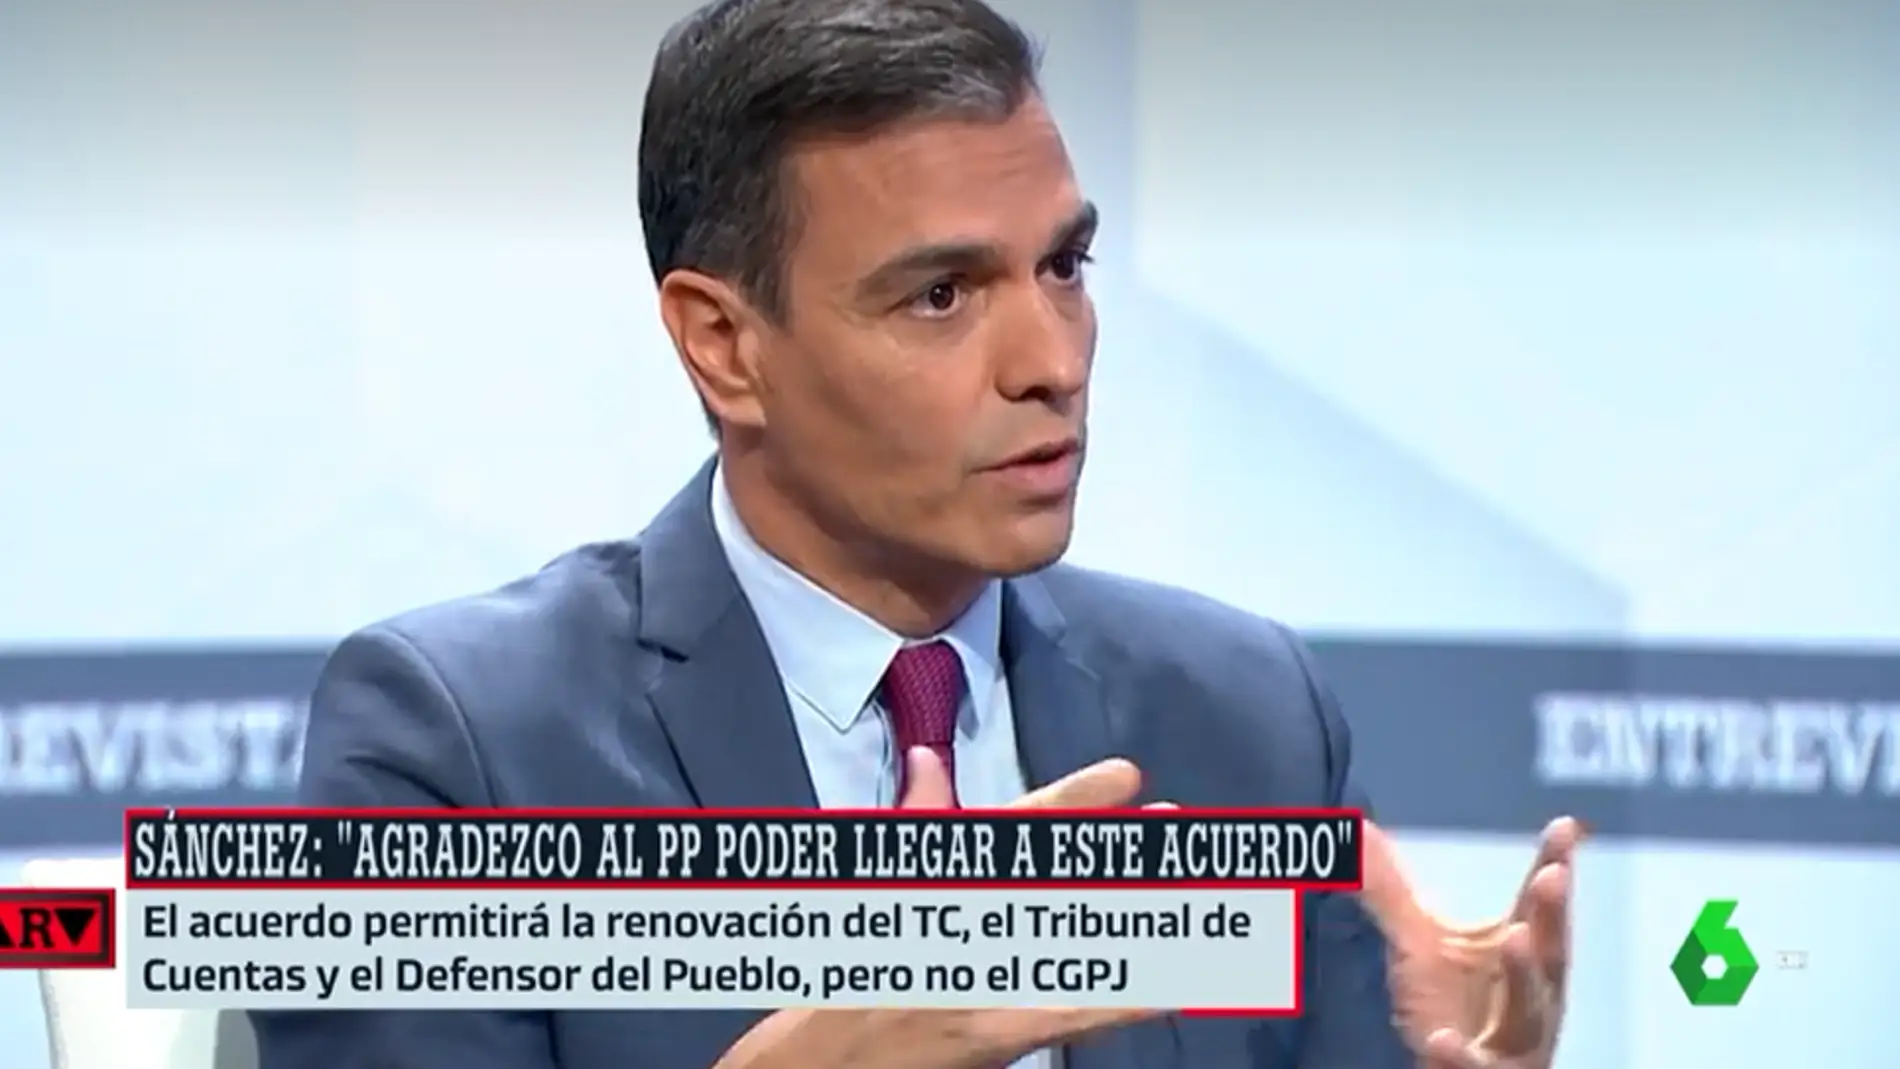 Pedro Sánchez agradece el acuerdo con el PP aunque considera un "sinsentido" el bloqueo del CGPJ